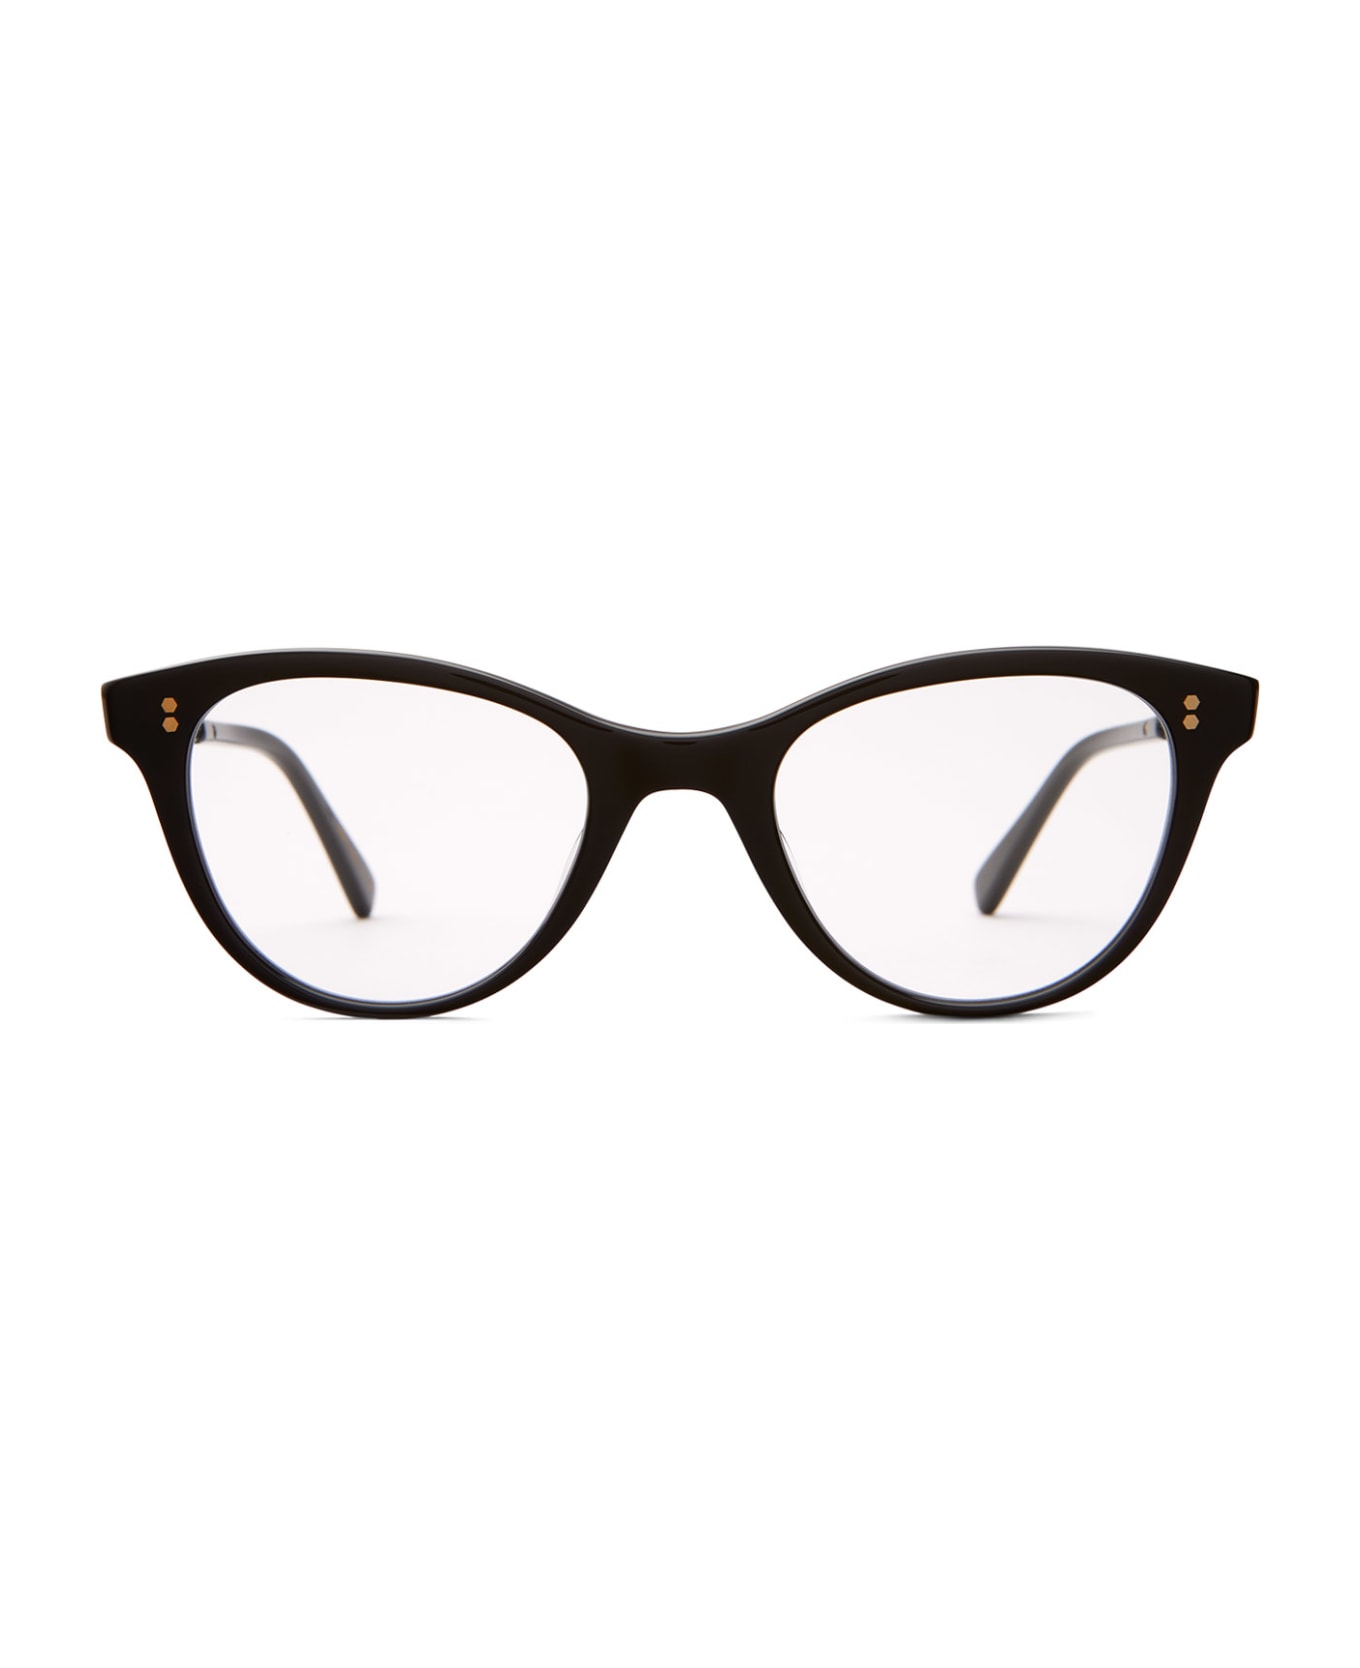 Mr. Leight Taylor C Black-12k White Gold Glasses - Black-12K White Gold